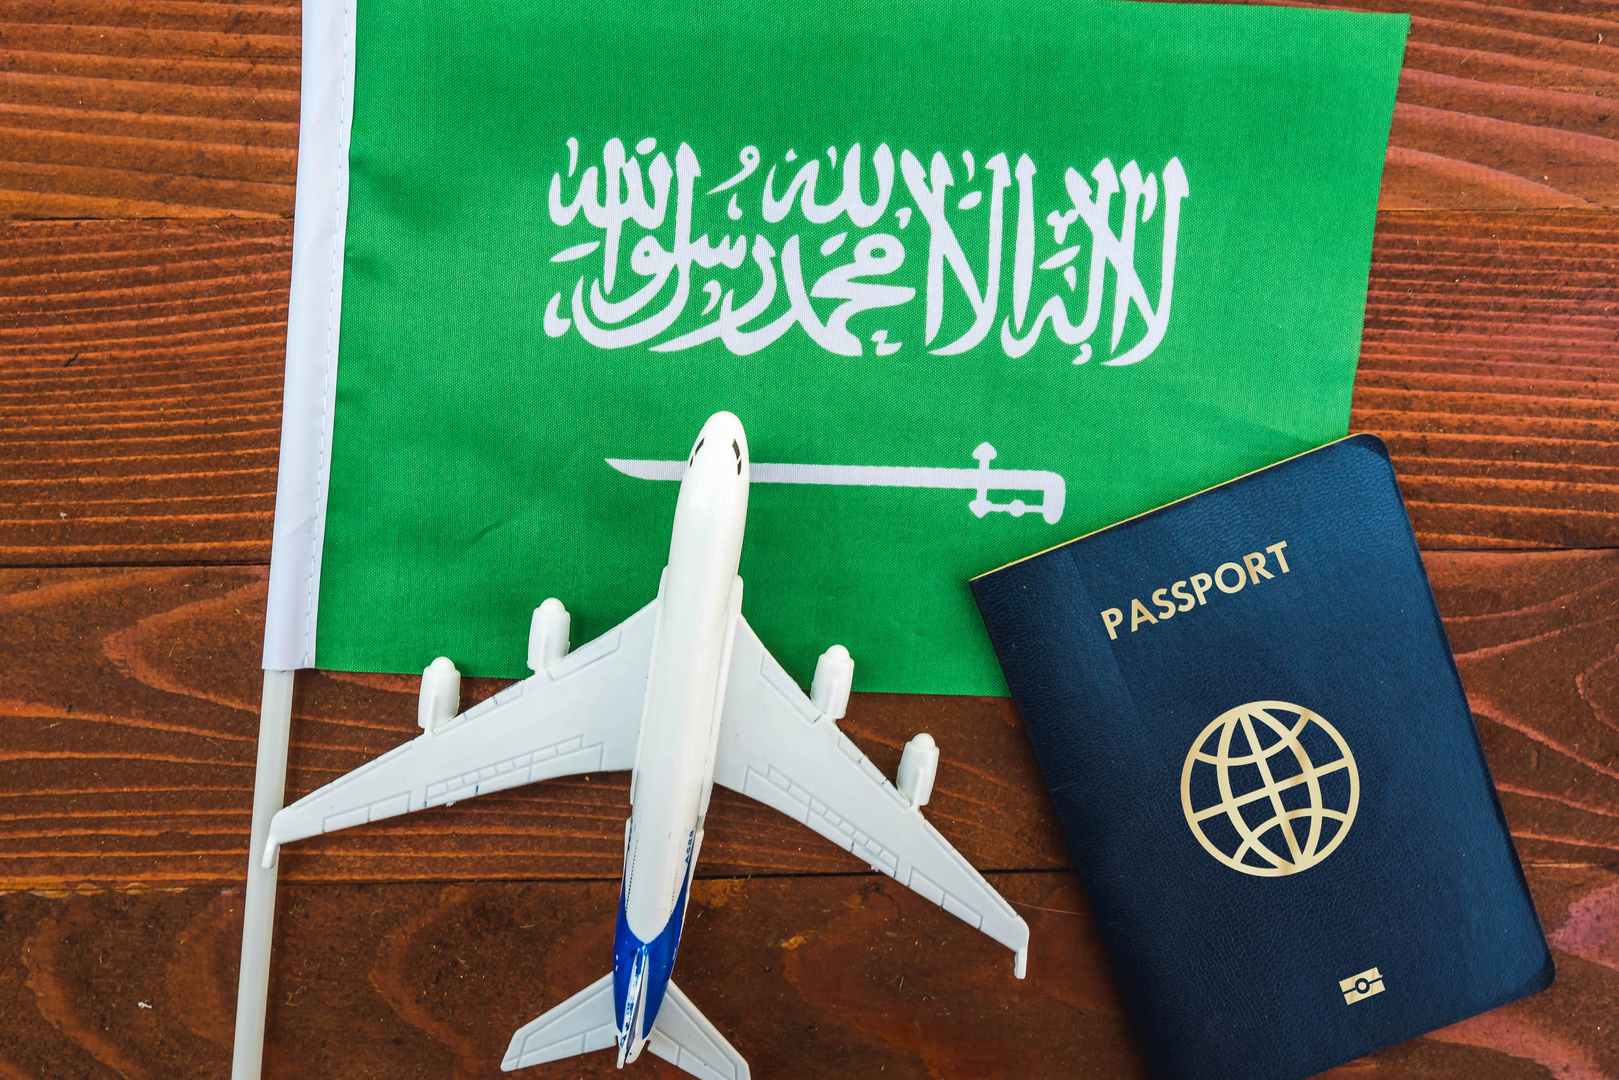 دولة أوروبية تعلن إعفاء السعوديين من تأشيرة الدخول (فيديو)